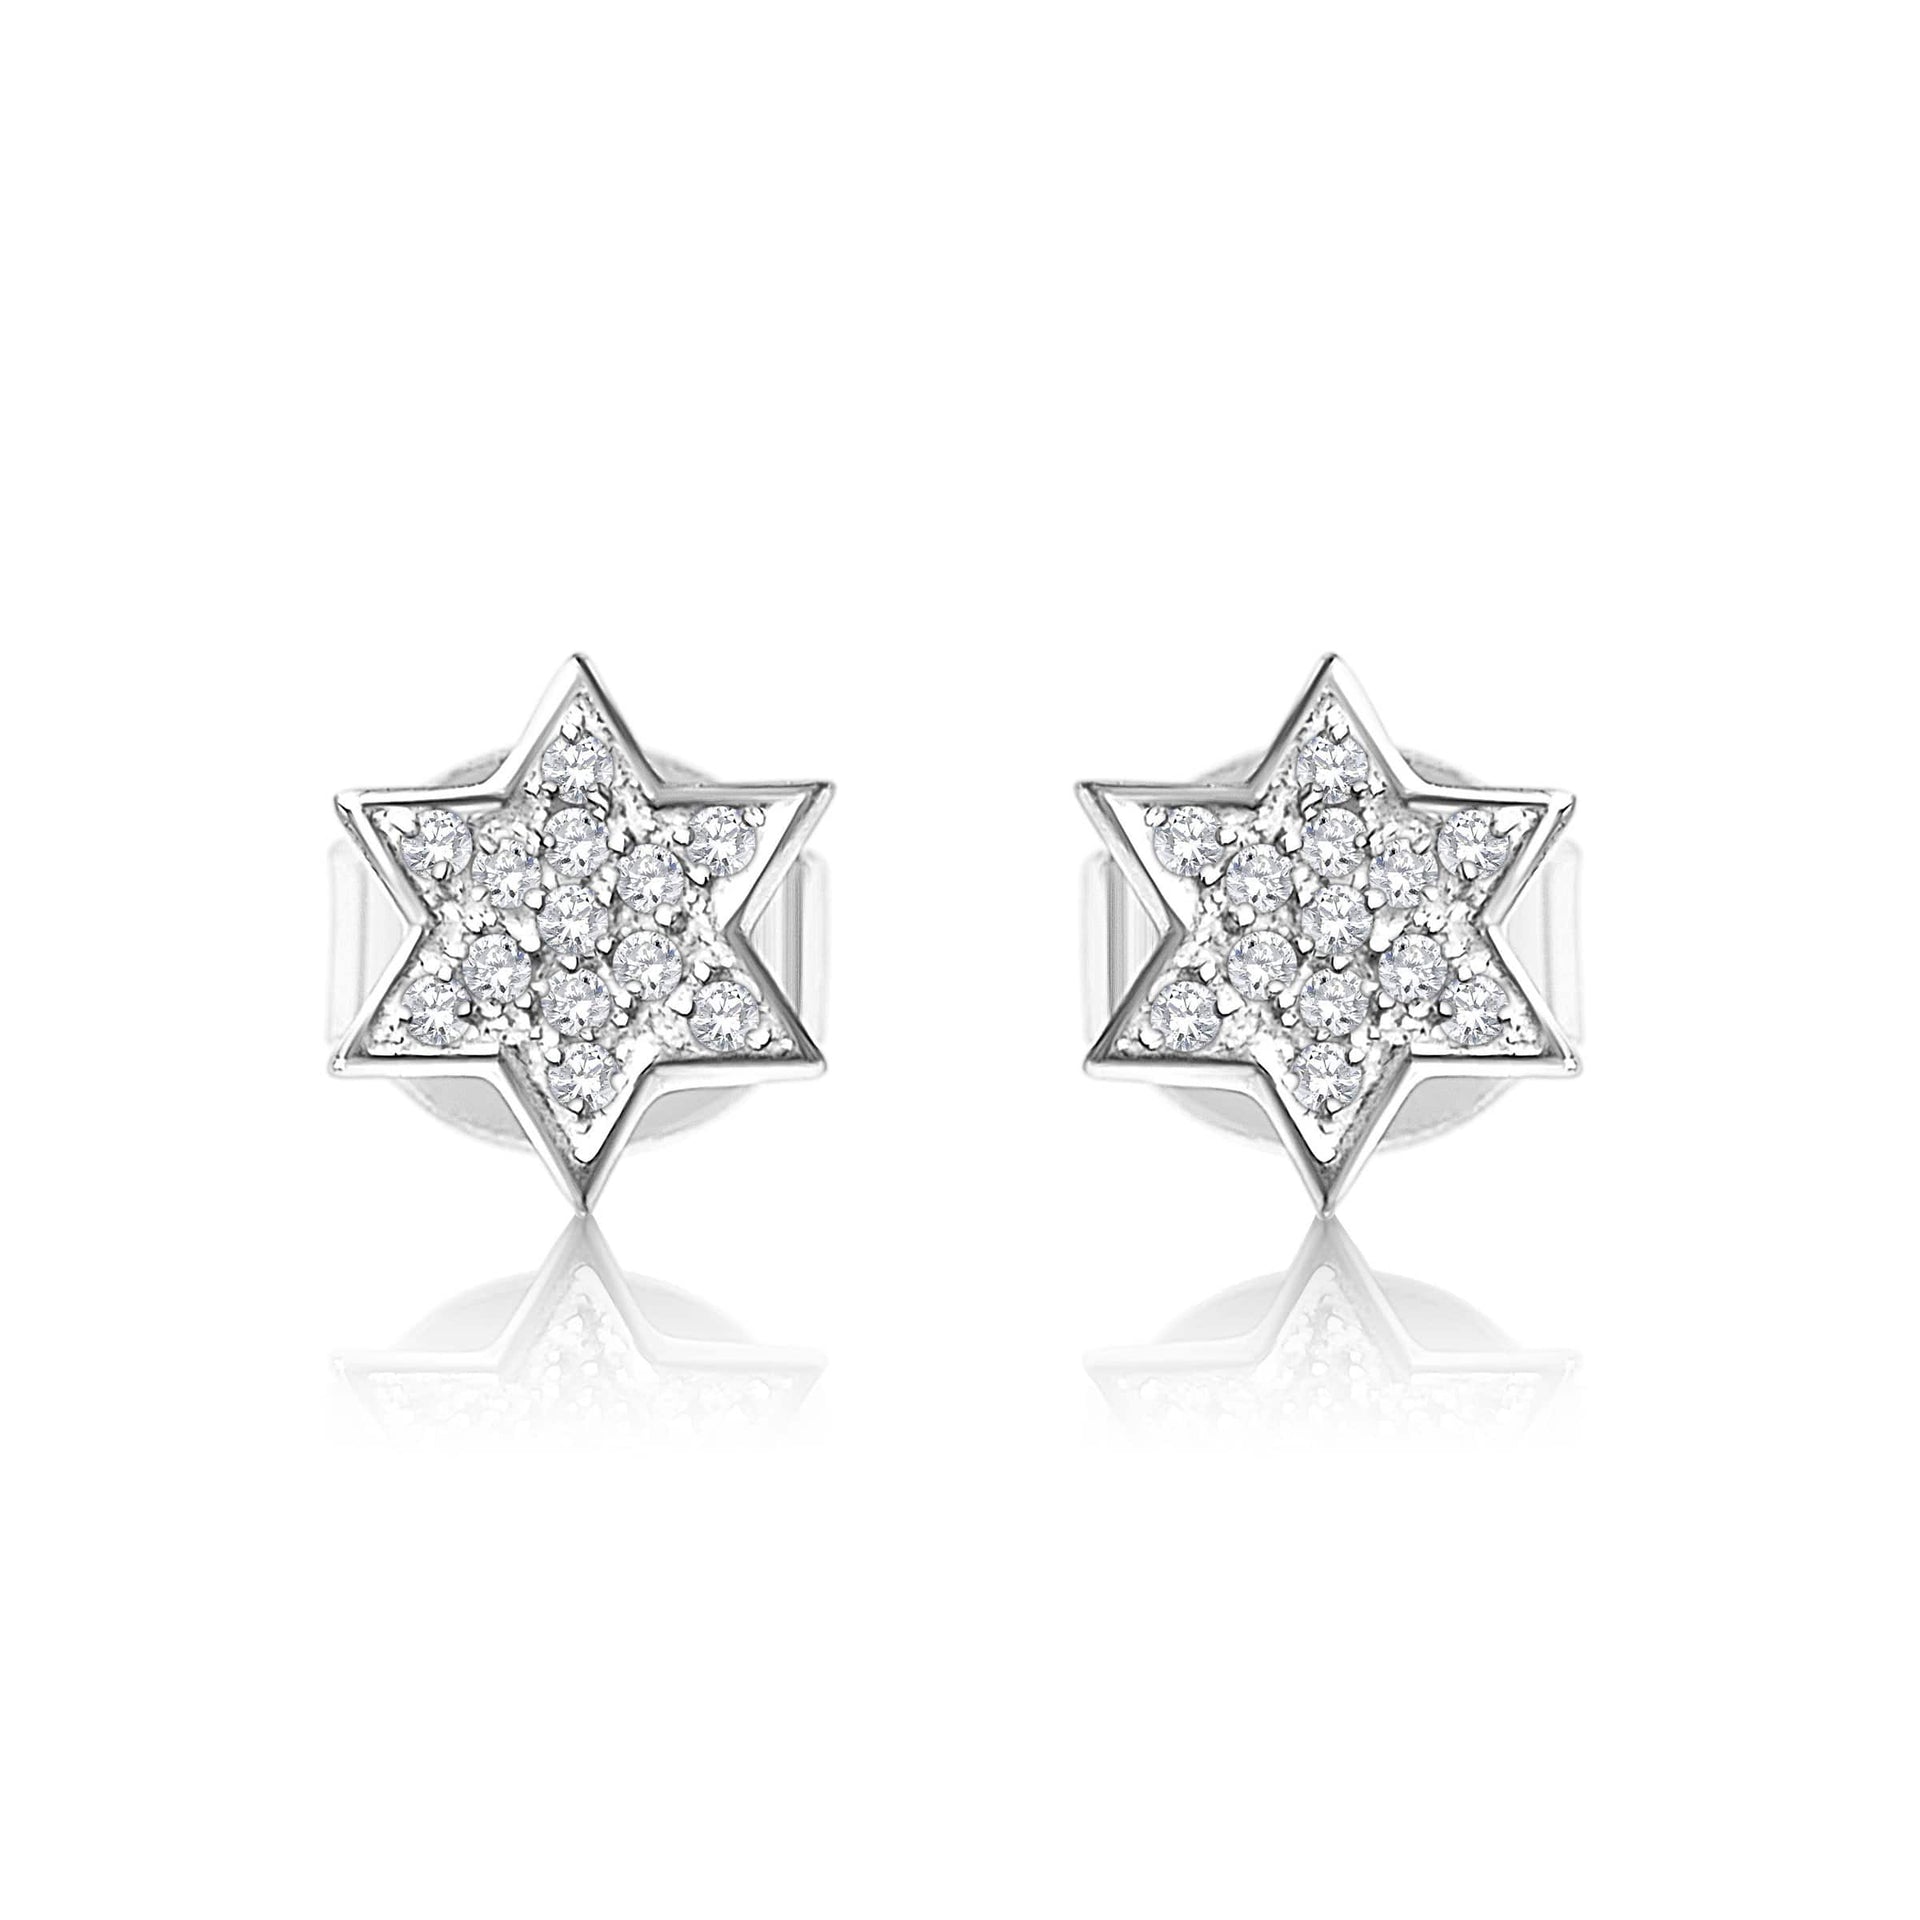 Alef Bet Earrings White Gold Diamond Star of David Earrings - 14k Gold, White Gold or Rose Gold